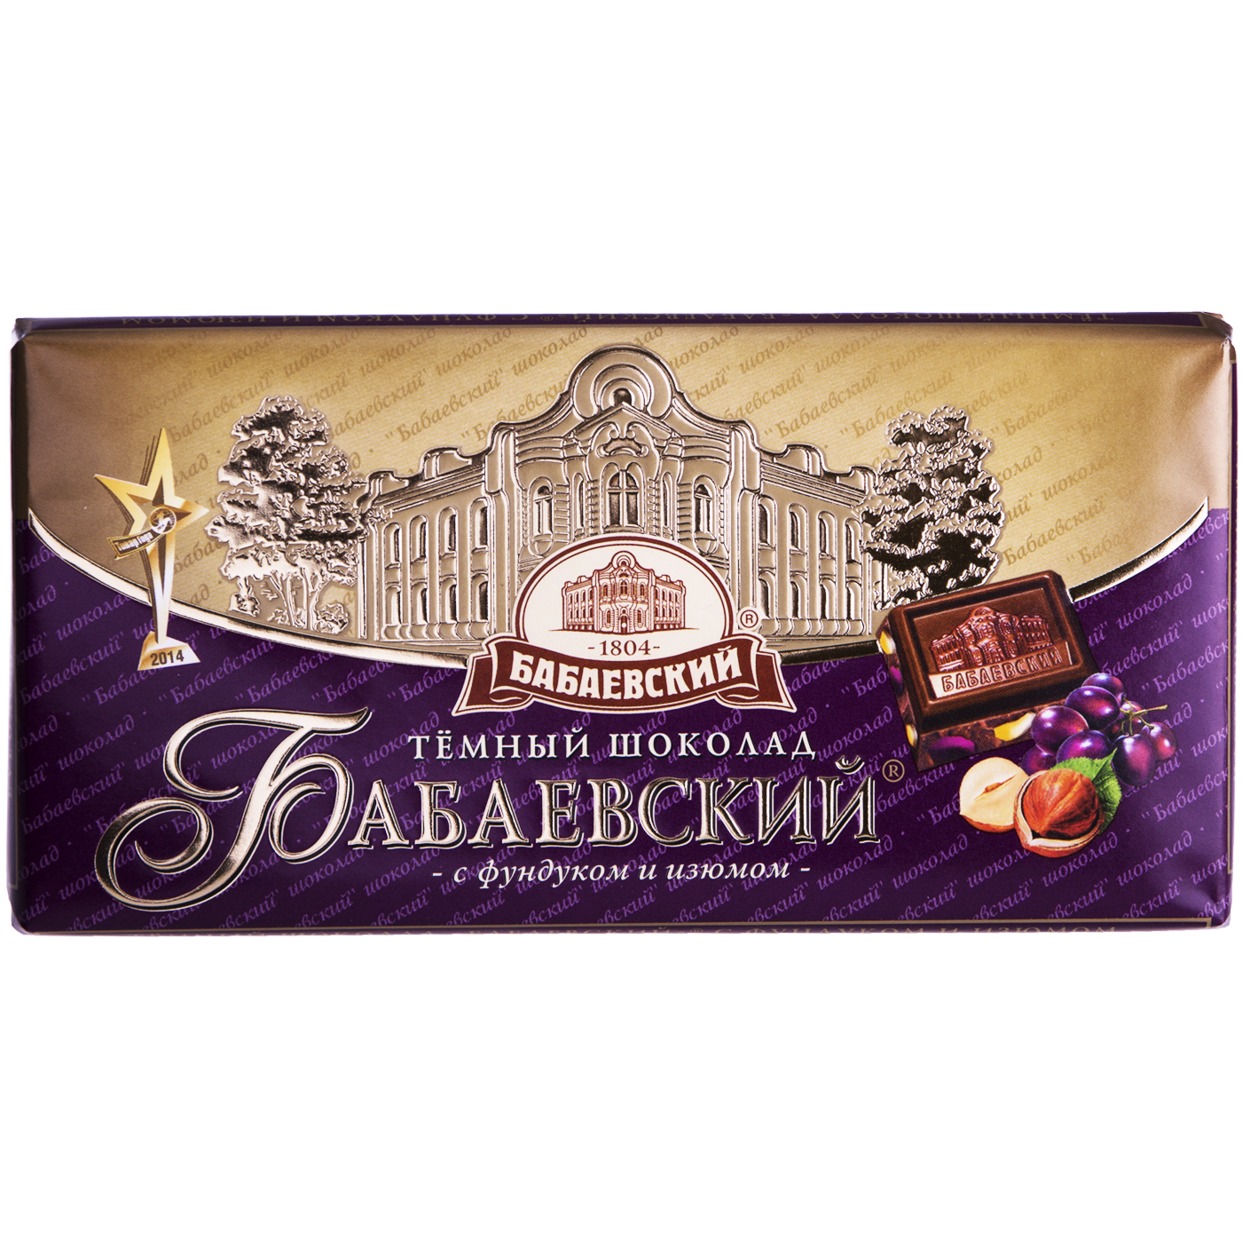 БАБАЕВ.Шоколад горьк.фундук/изюм 100г по акции в Пятерочке